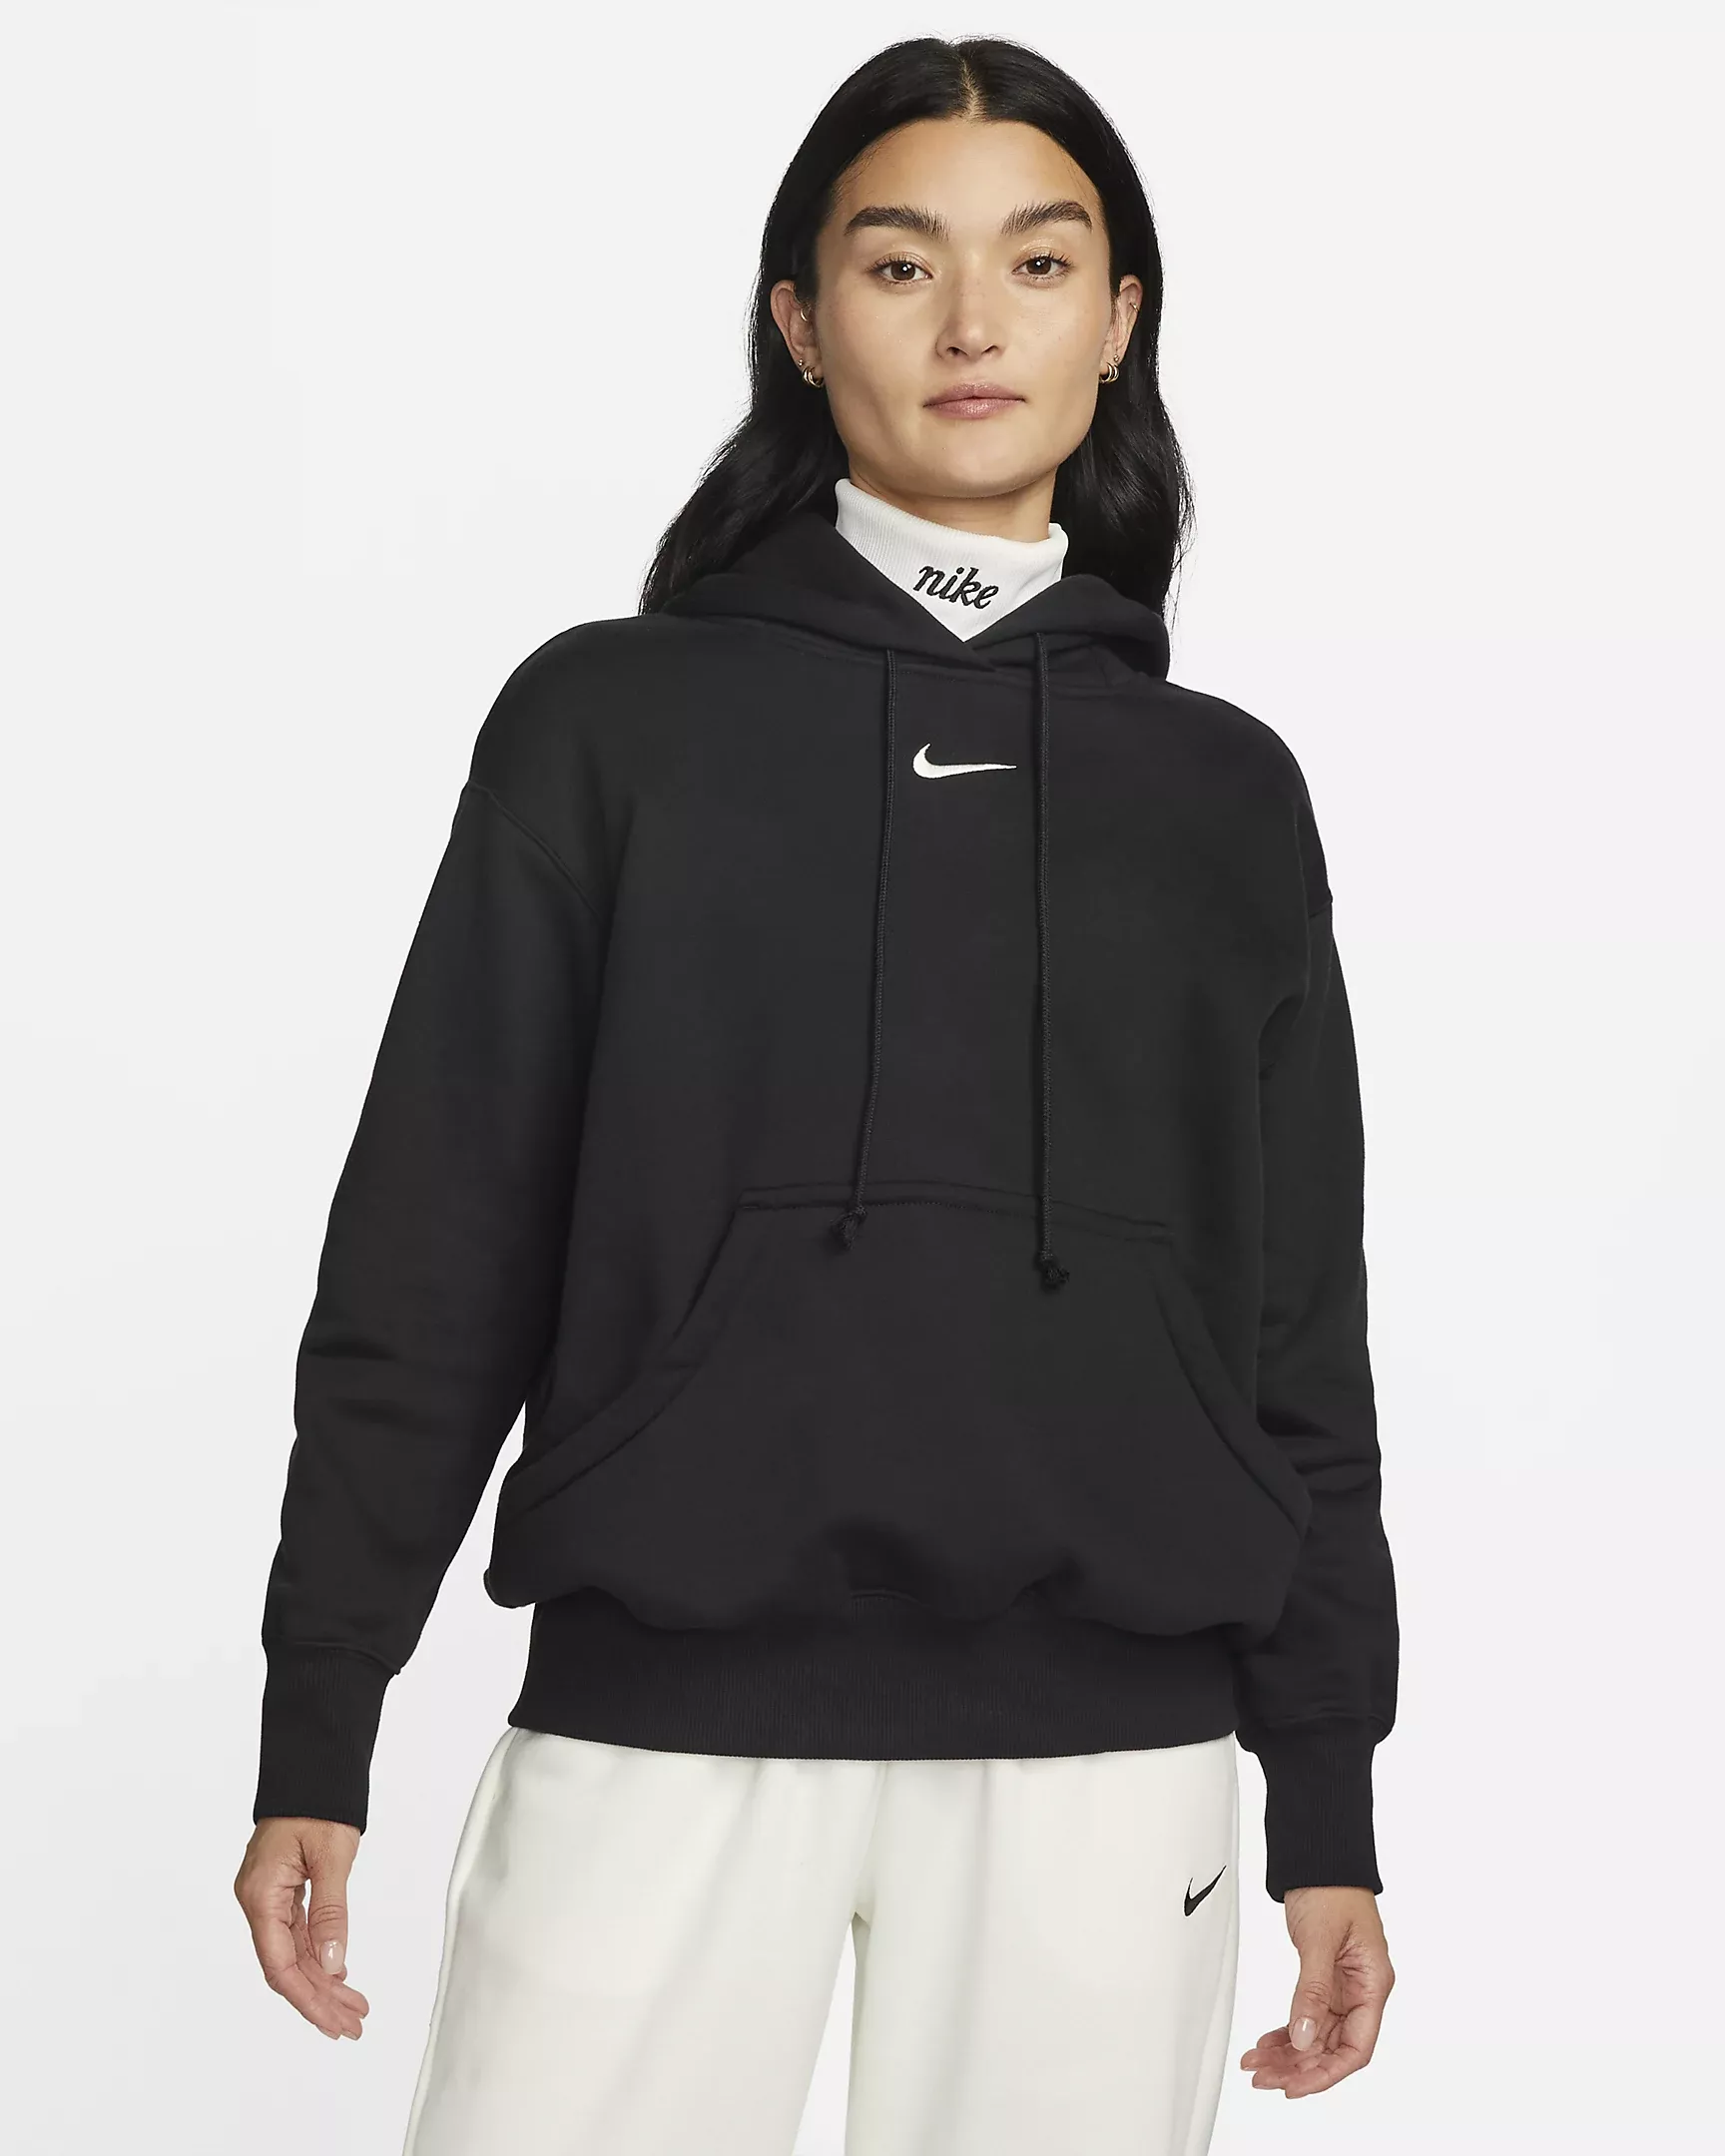 Nike Sportswear Phoenix Fleece Over-Oversized Pullover Hoodie